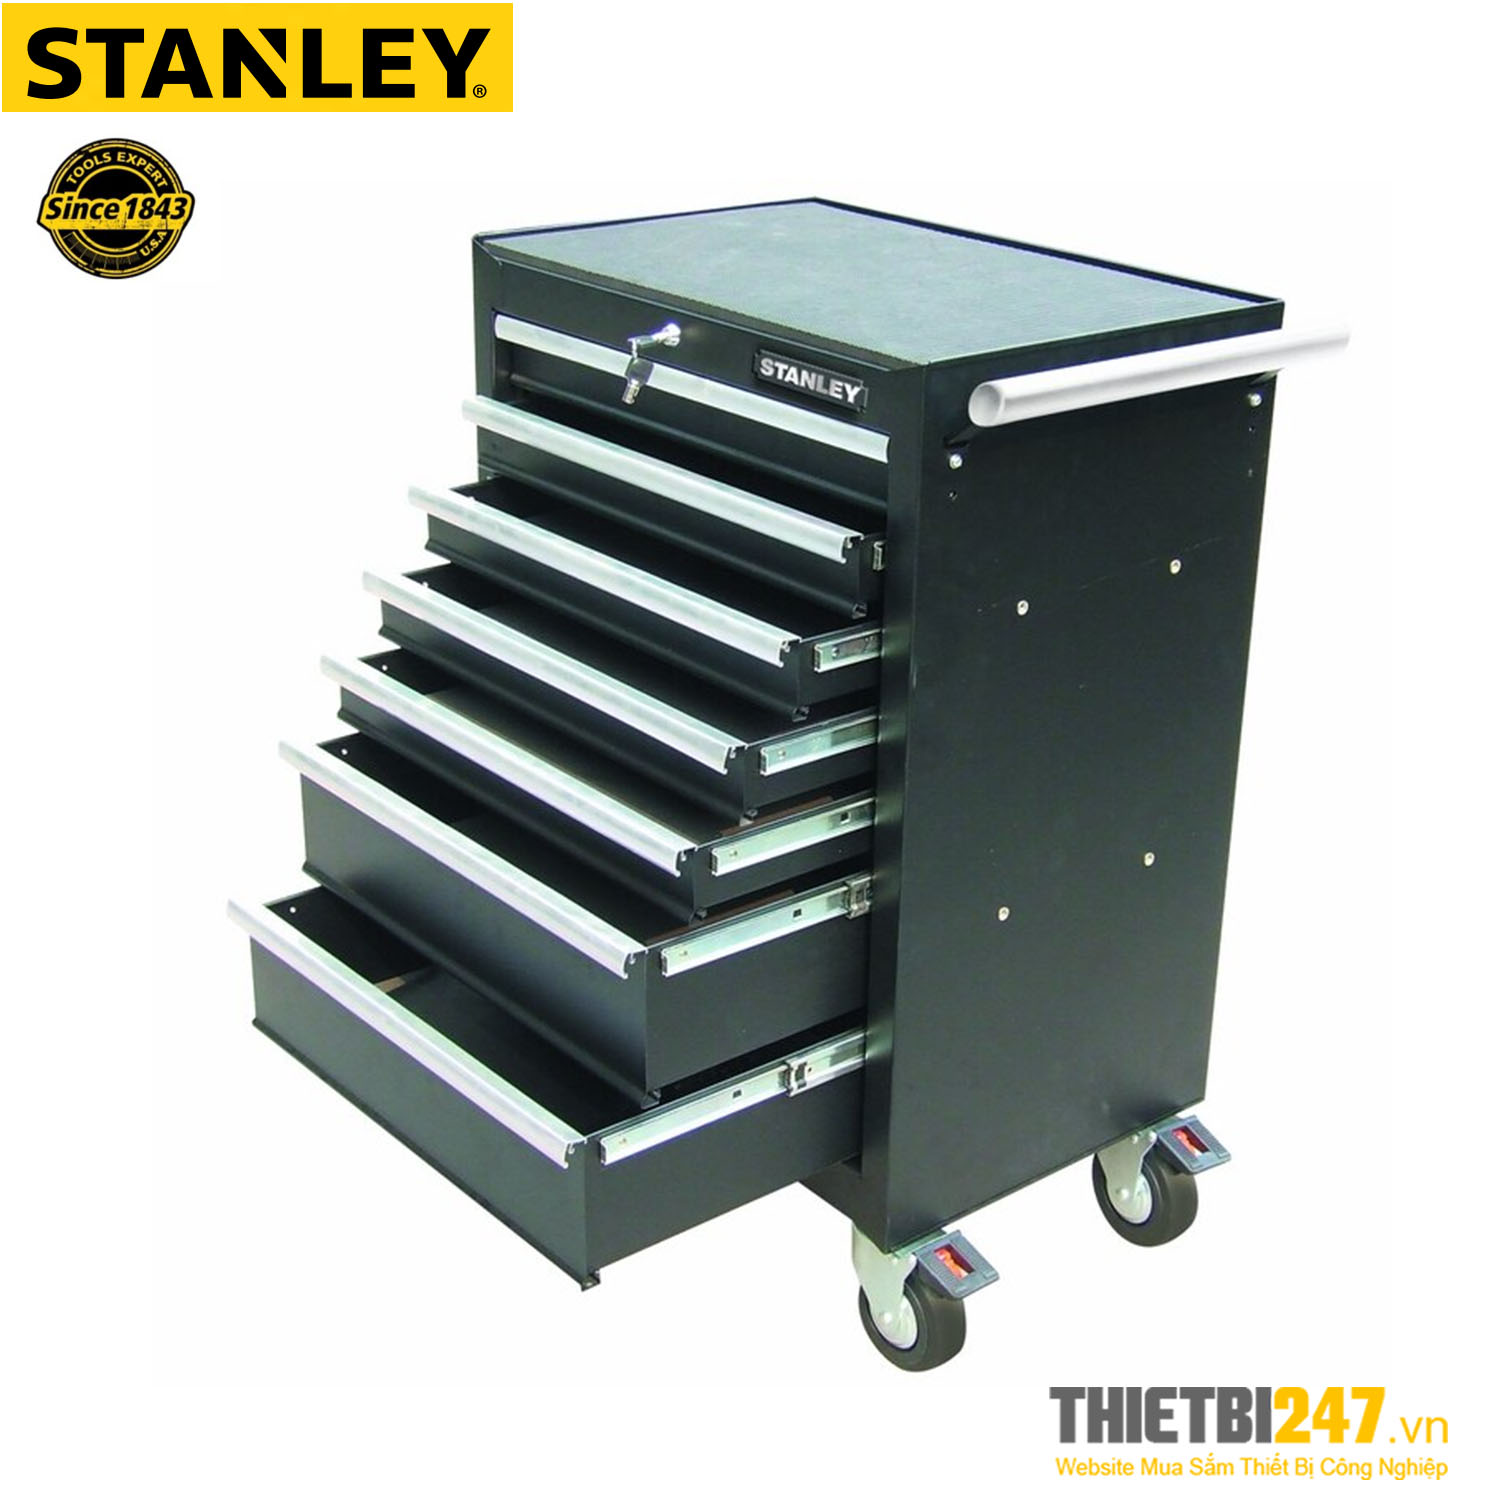 Tủ đựng dụng cụ Stanley 7 ngăn 93-547-23 676x459x857mm